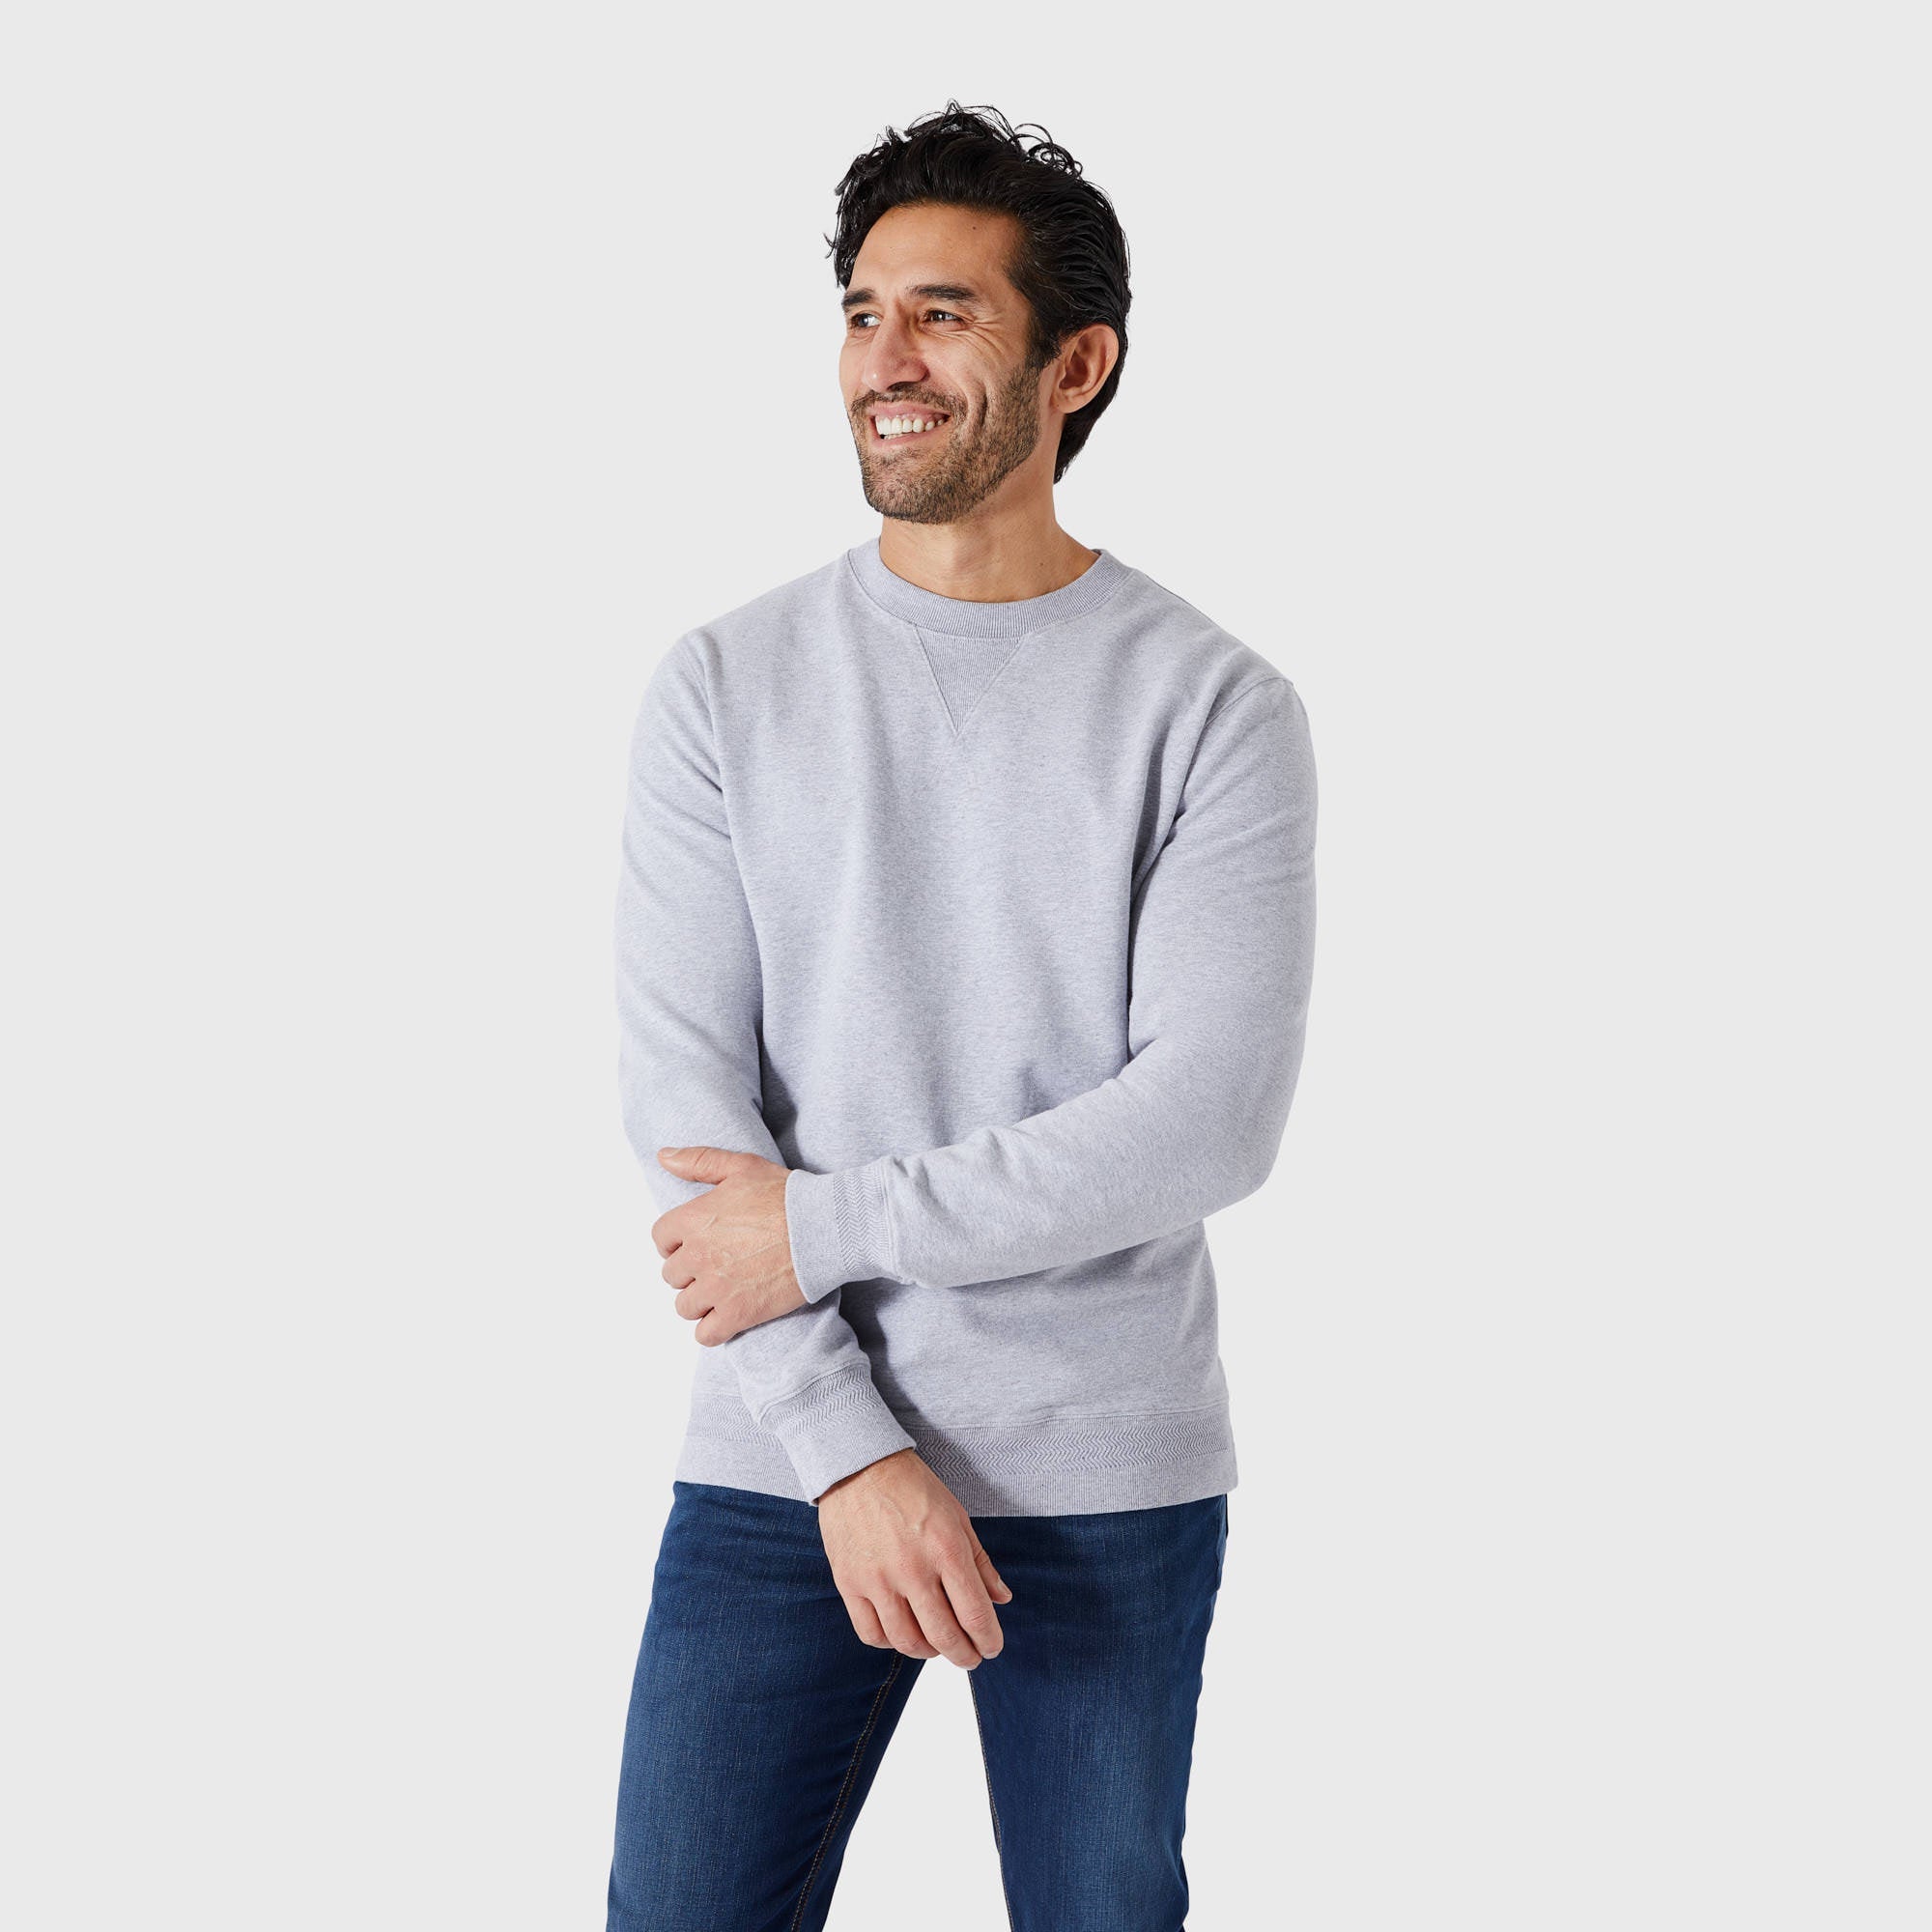 SPOKE Sweatshirts - Grey Marl Men's Custom Fit Sweatshirts - SPOKE